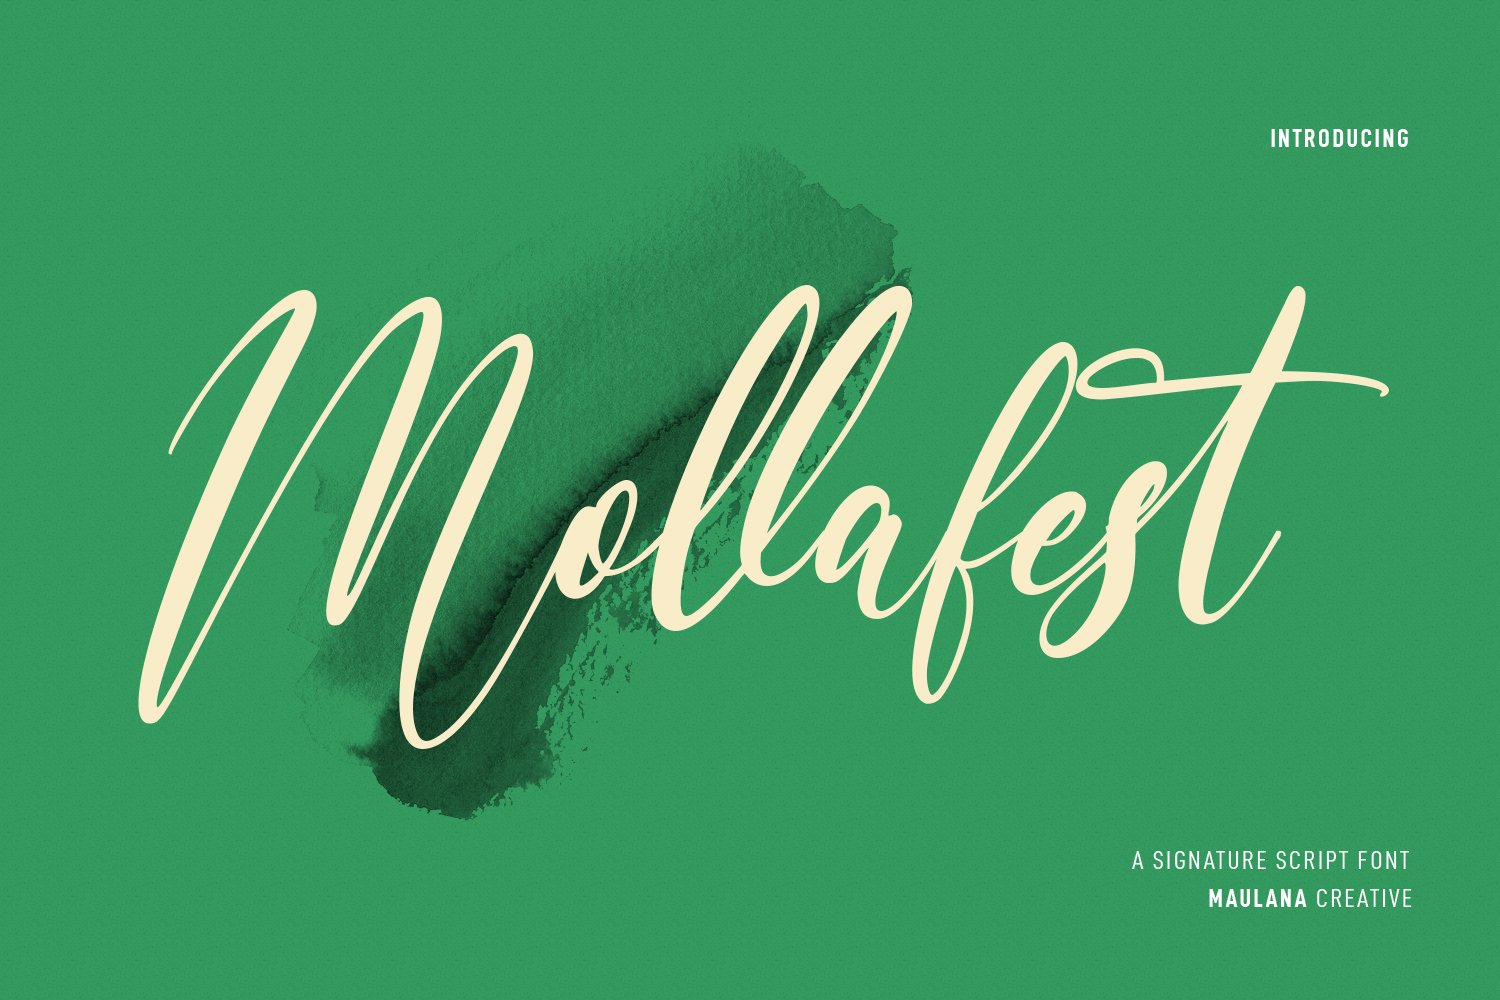 Mollafest Script Font cover image.